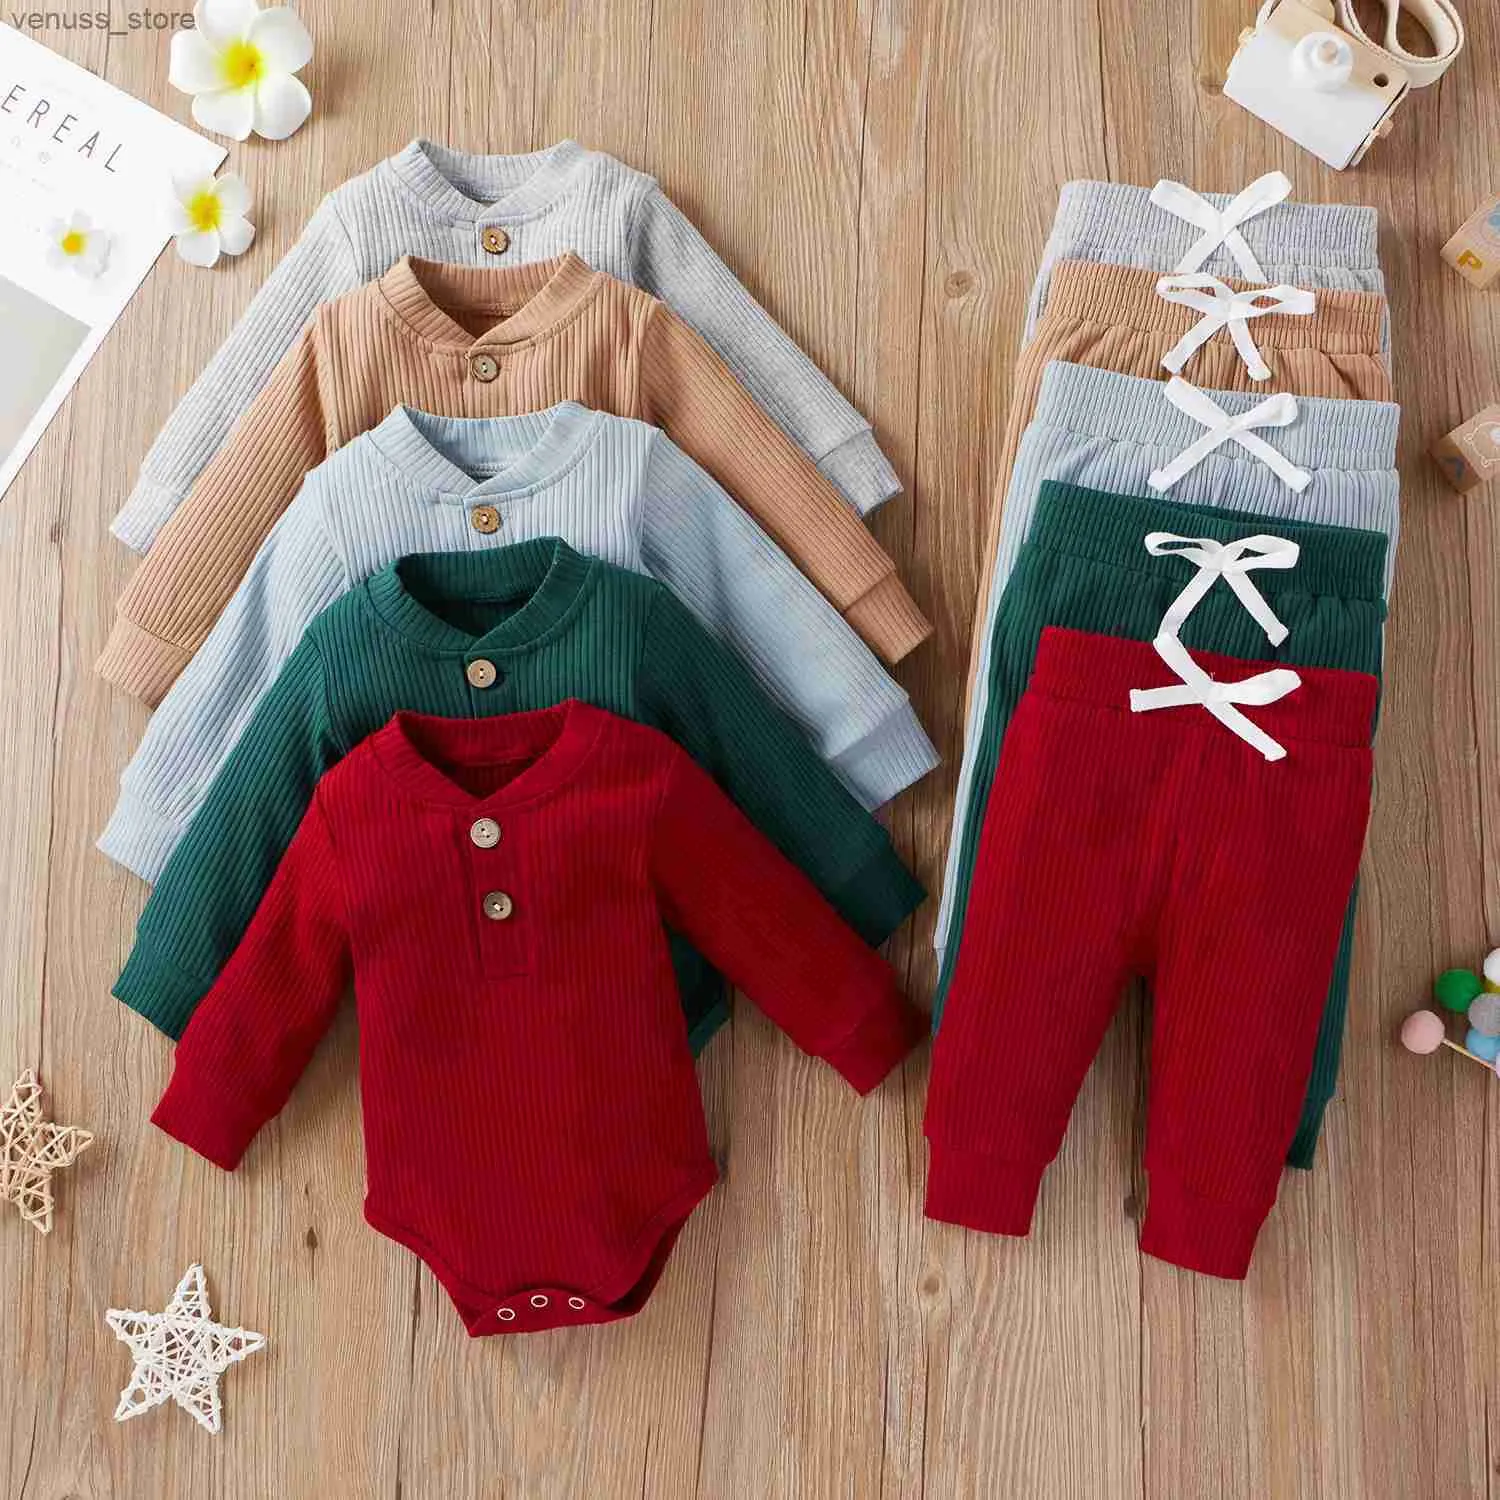 Conjuntos de roupas 16 Cores Baby Knit Solid Sets recém-nascidos meninos meninos cair no inverno Romper de manga longa + calça elástica roupa de criança 0-24m